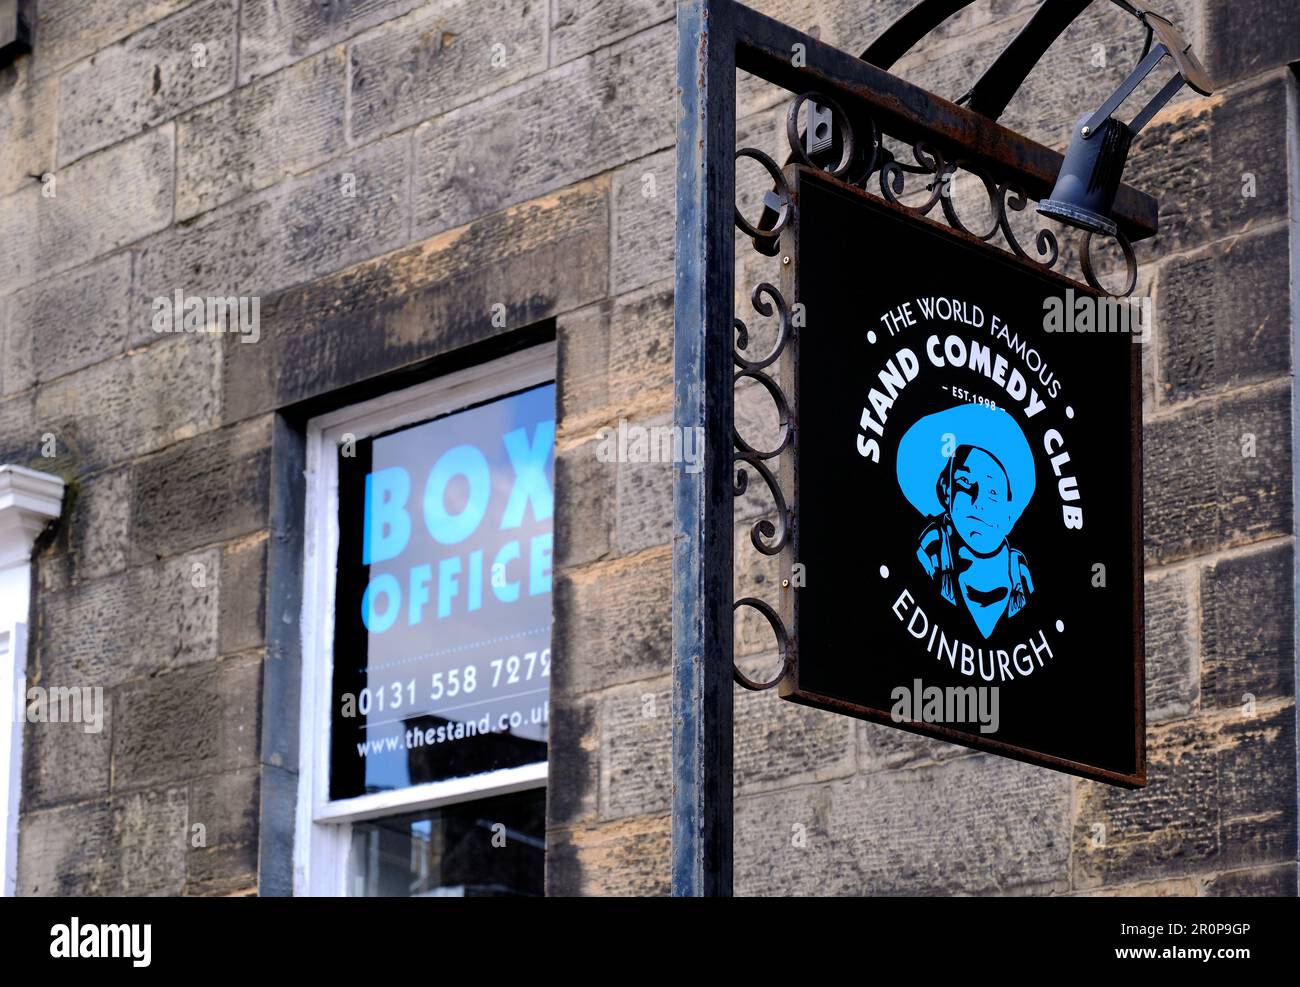 Den Comedy Club, die York Place, Edinburgh, Schottland Stand Stockfoto